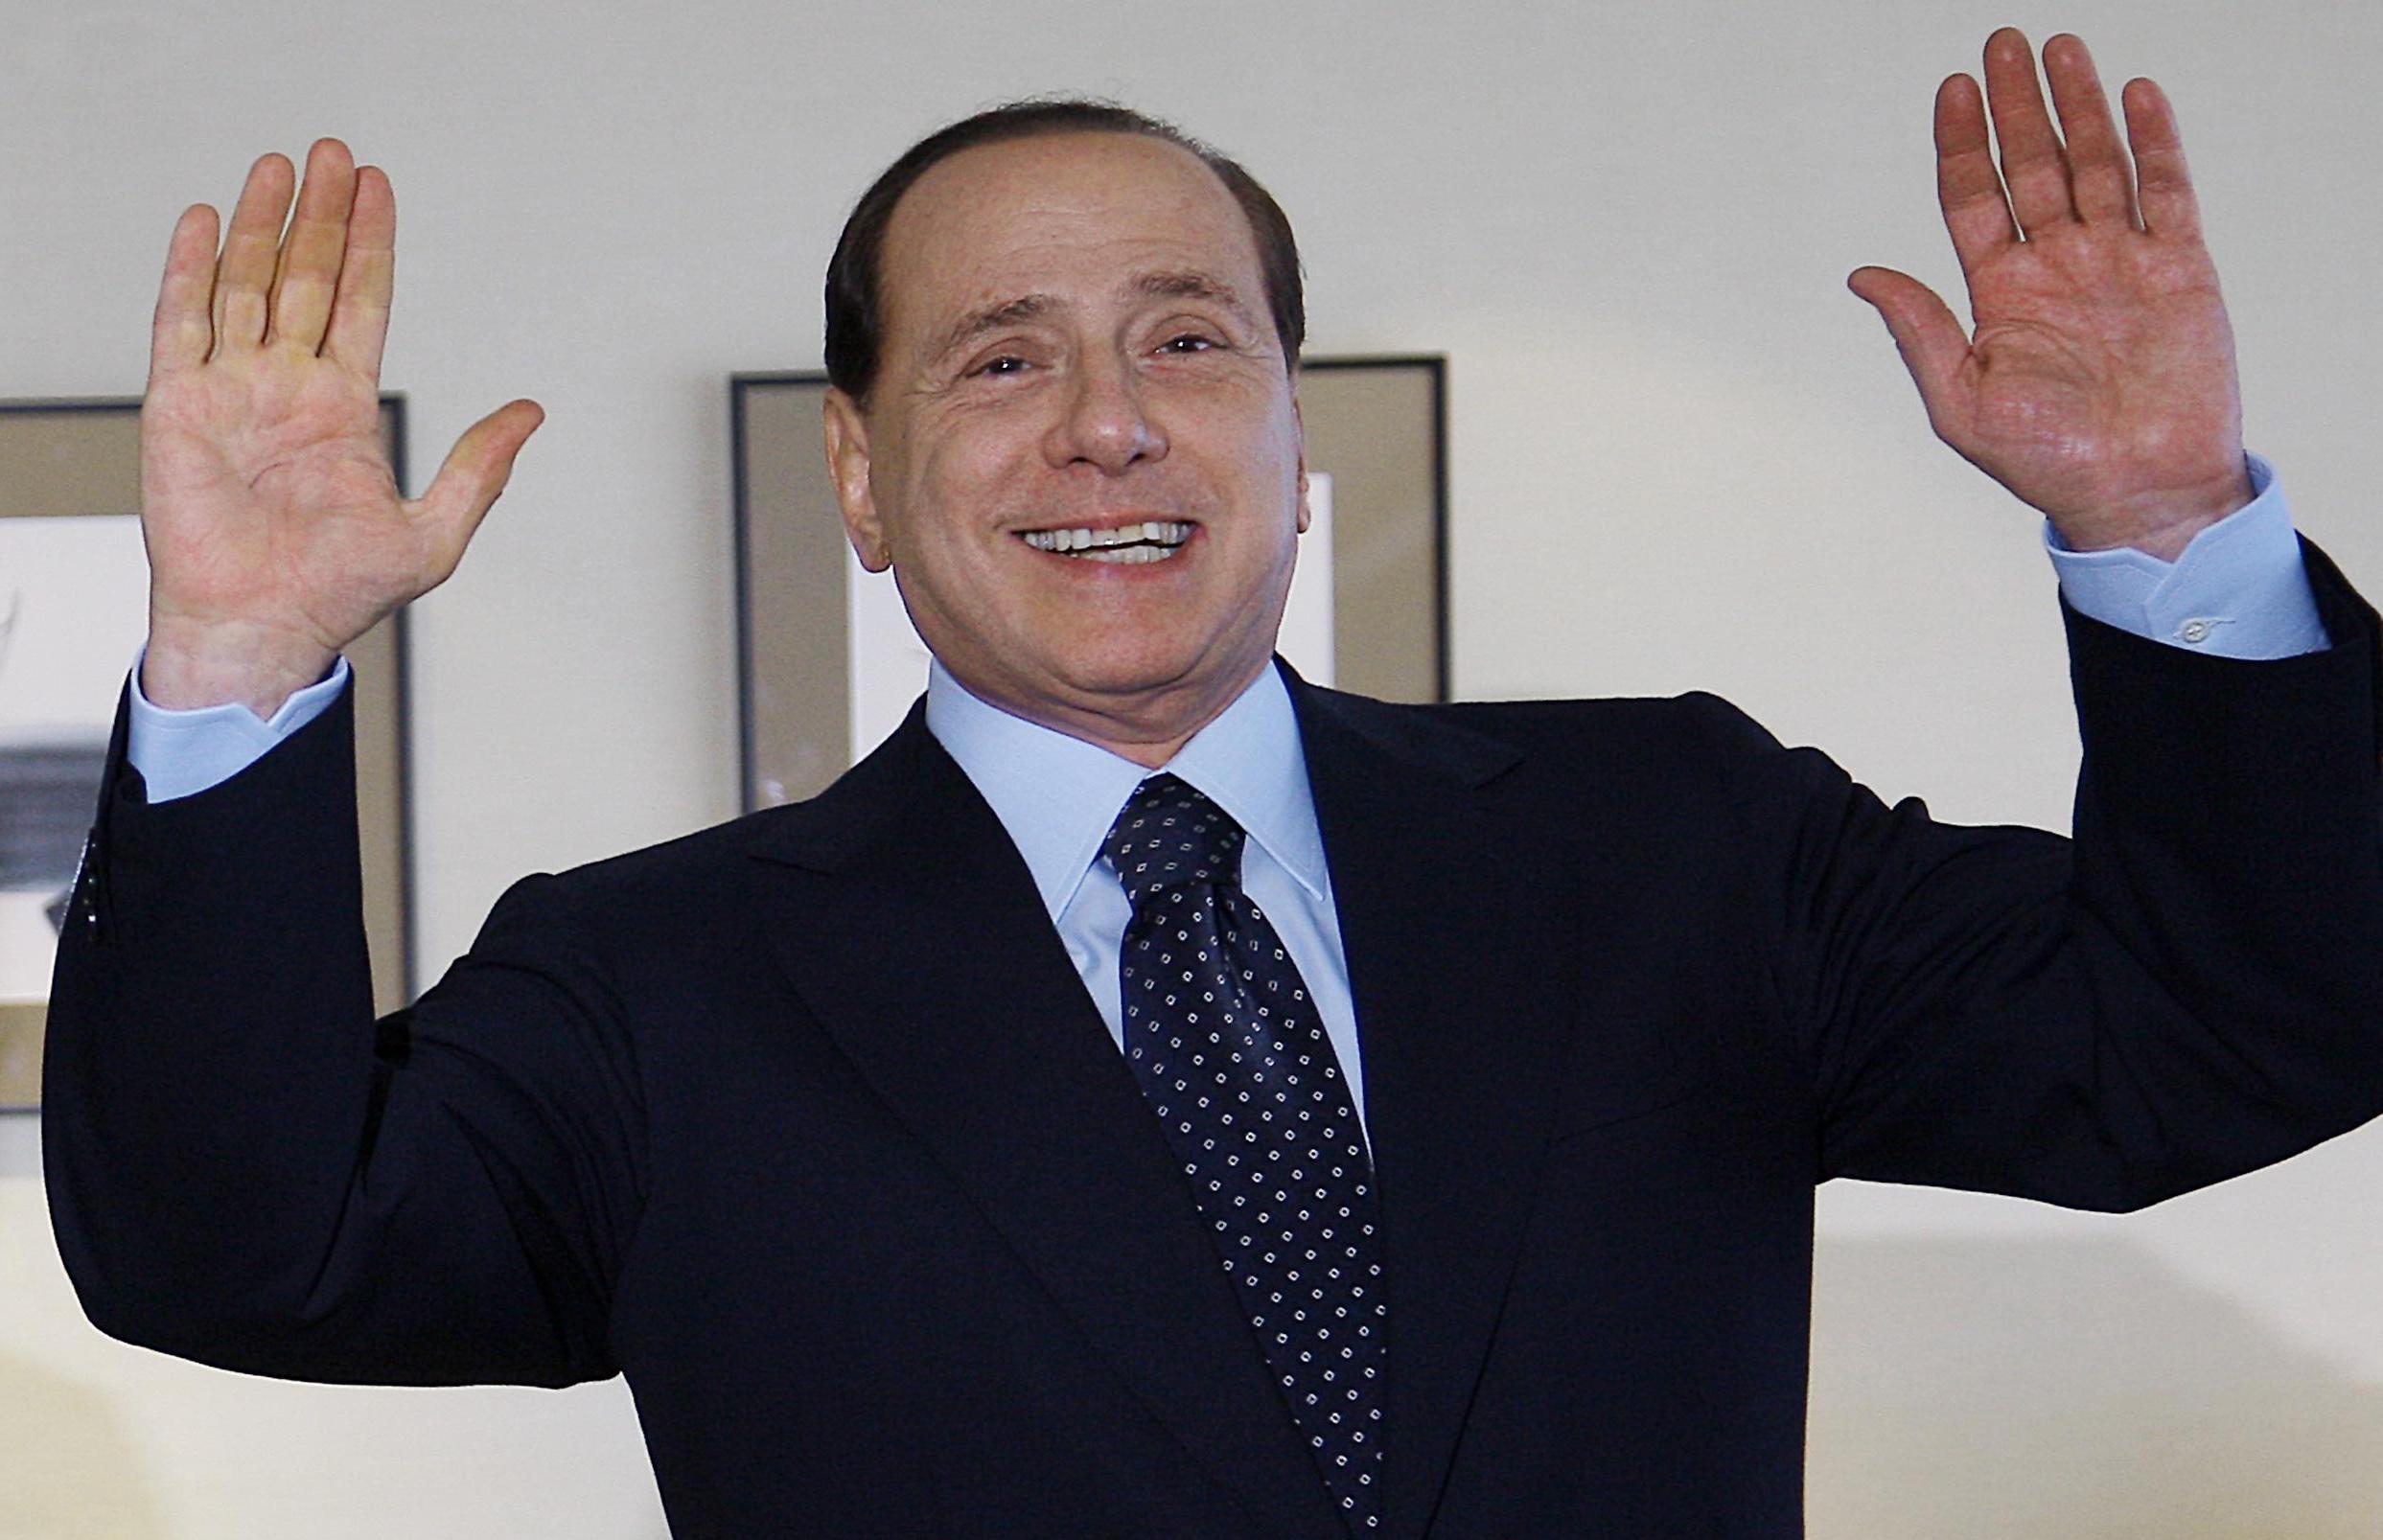 Berlusconi’s opkomst en ondergang: een les voor de naaste toekomst